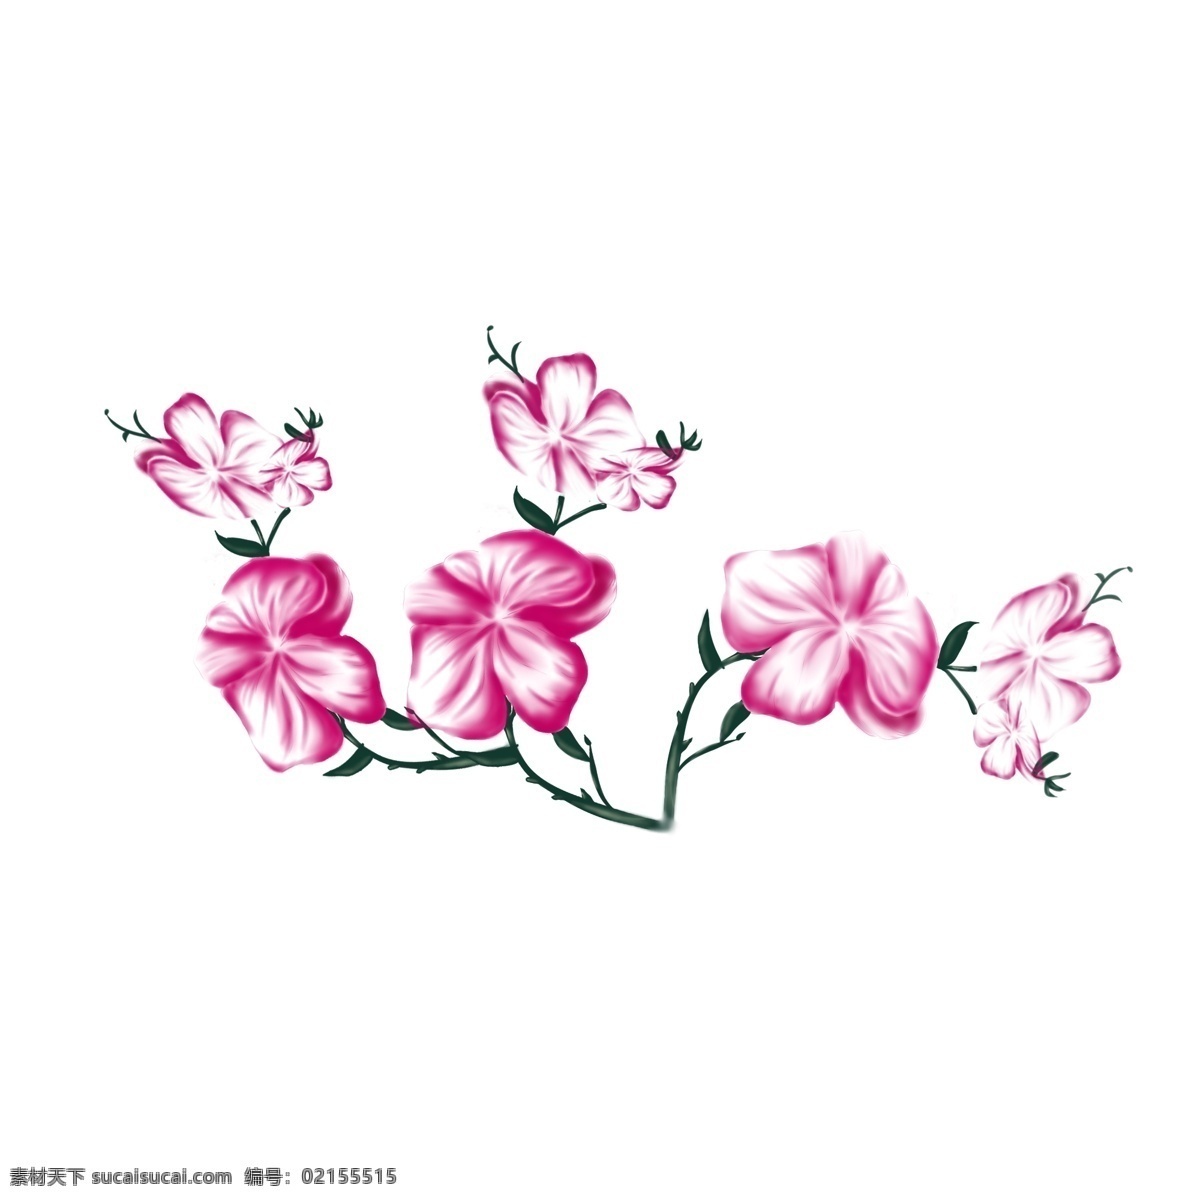 紫红色 手绘 蝴蝶兰 红色 小清新 植物 花朵 元素